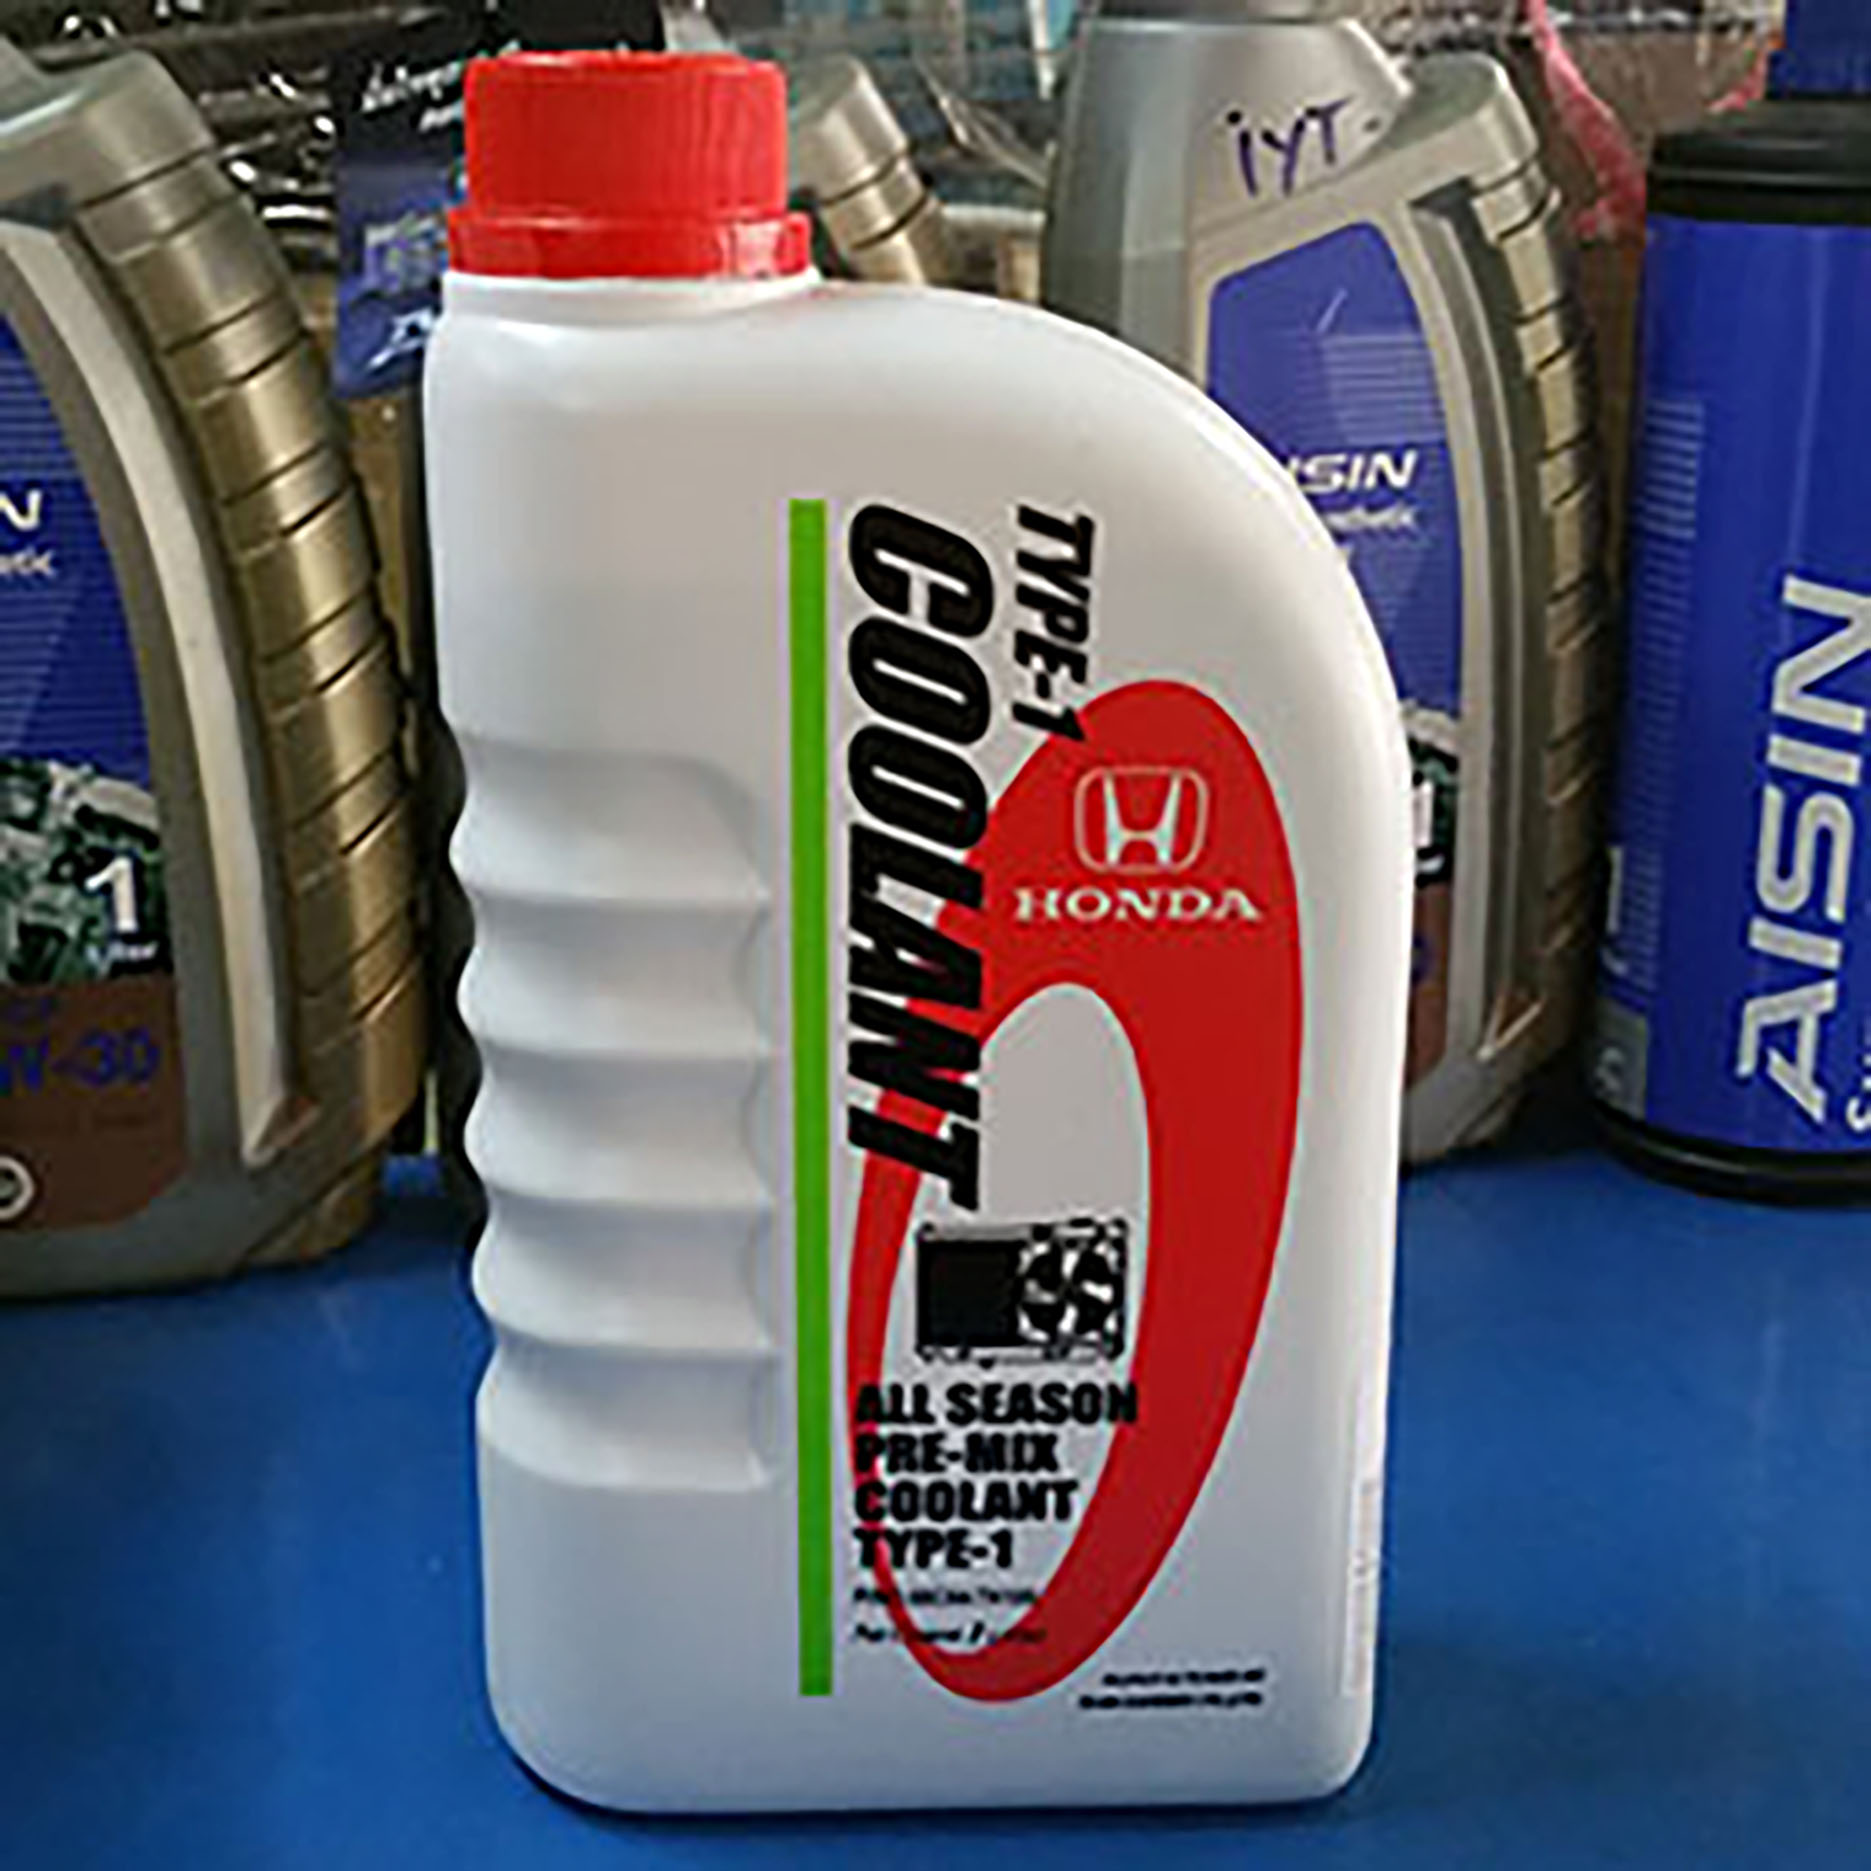 HONDA น้ำยาหล่อเย็น น้ำยาเติมกันสนิมหม้อน้ำ น้ำยาเติมหม้อน้ำ สีเขียว ALL SEASON PRE-MIX COOLANT TYPE-1 1 ลิตร สำหรับรถ Honda ทุกรุ่น รหัสอะไหล่แท้ (08C04-TH100)